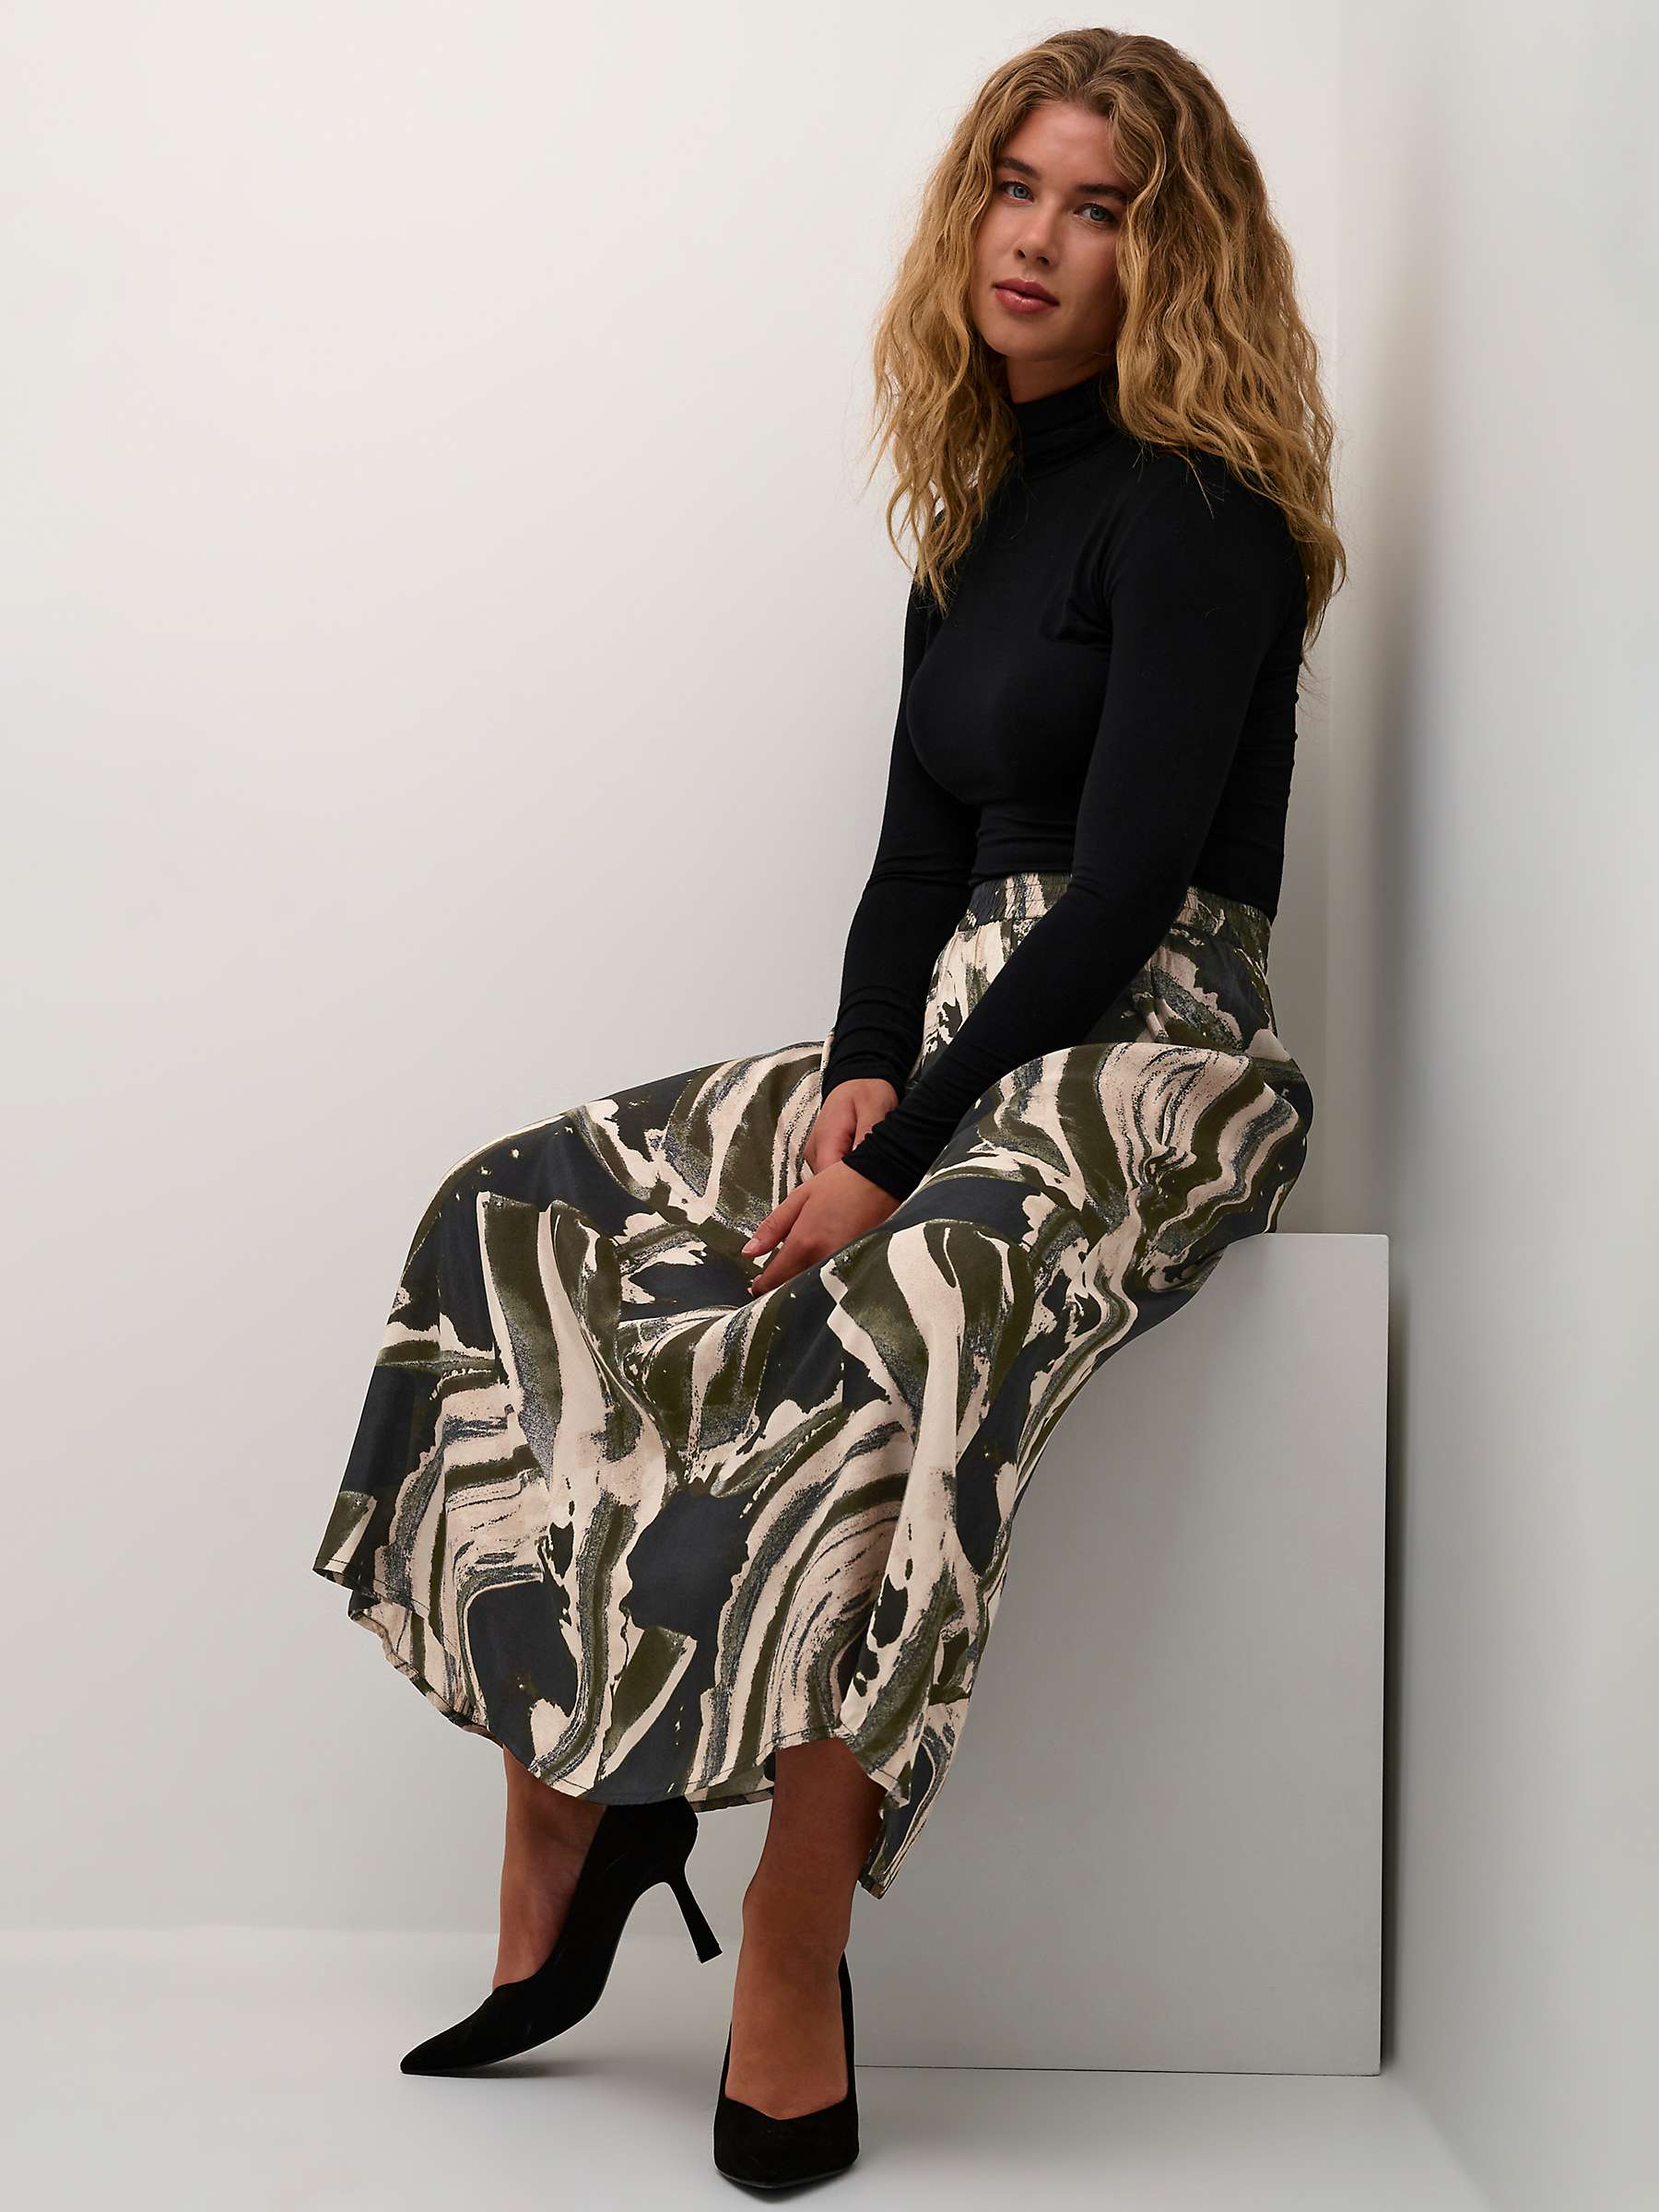 Buy KAFFE Sophia Abstract Print Skirt, Black/Green Online at johnlewis.com